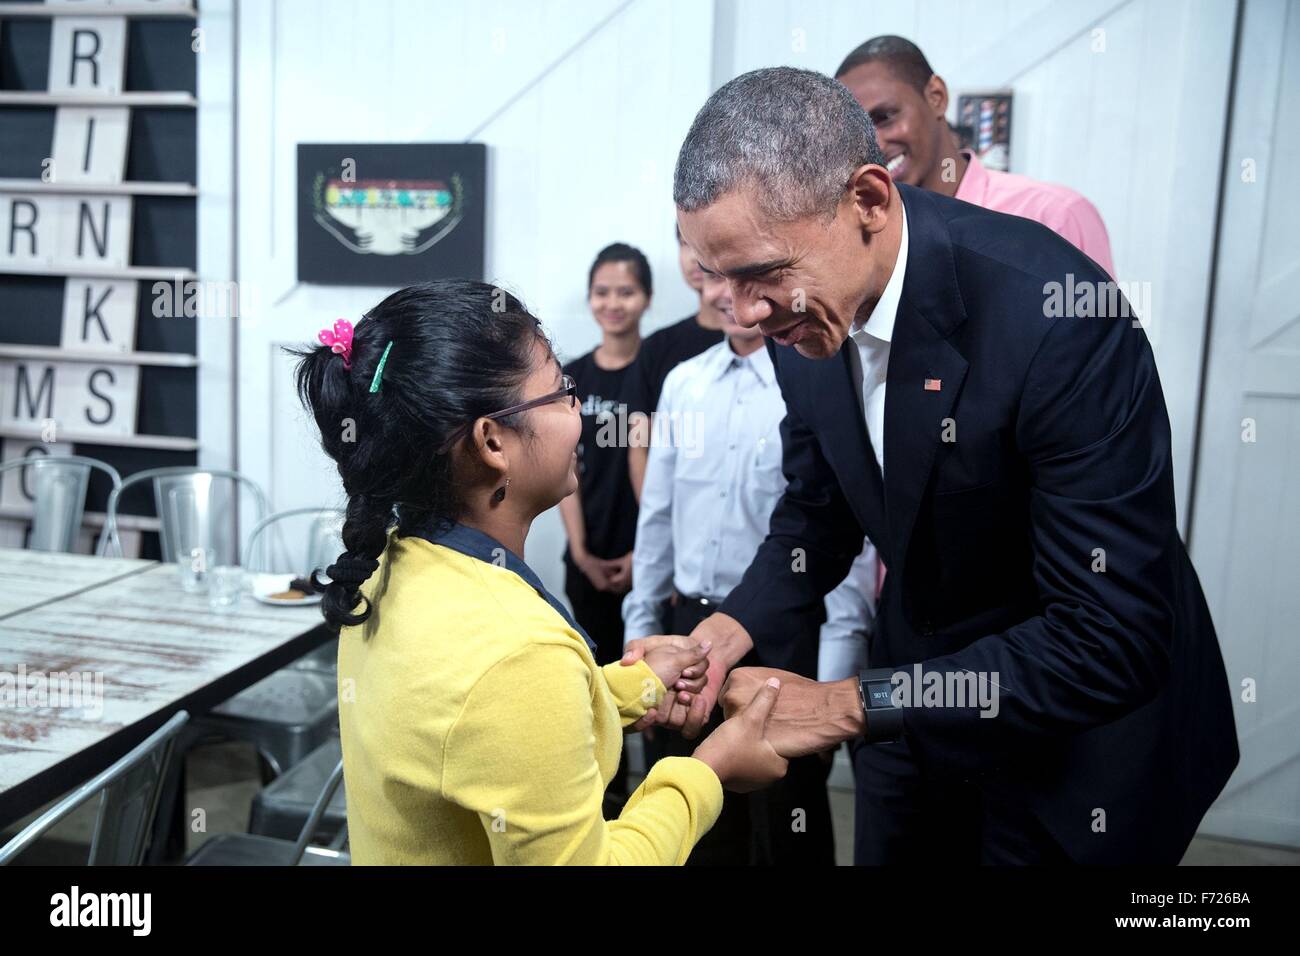 US-Präsident Barack Obama spricht mit einem jungen Mädchen während einer Tour durch die würde für Children Foundation 21. November 2015 in Kuala Lumpur, Malaysia. Das Zentrum unterstützt Arme Familien und Flüchtlingen, darunter die von Myanmar und Syrien. Stockfoto